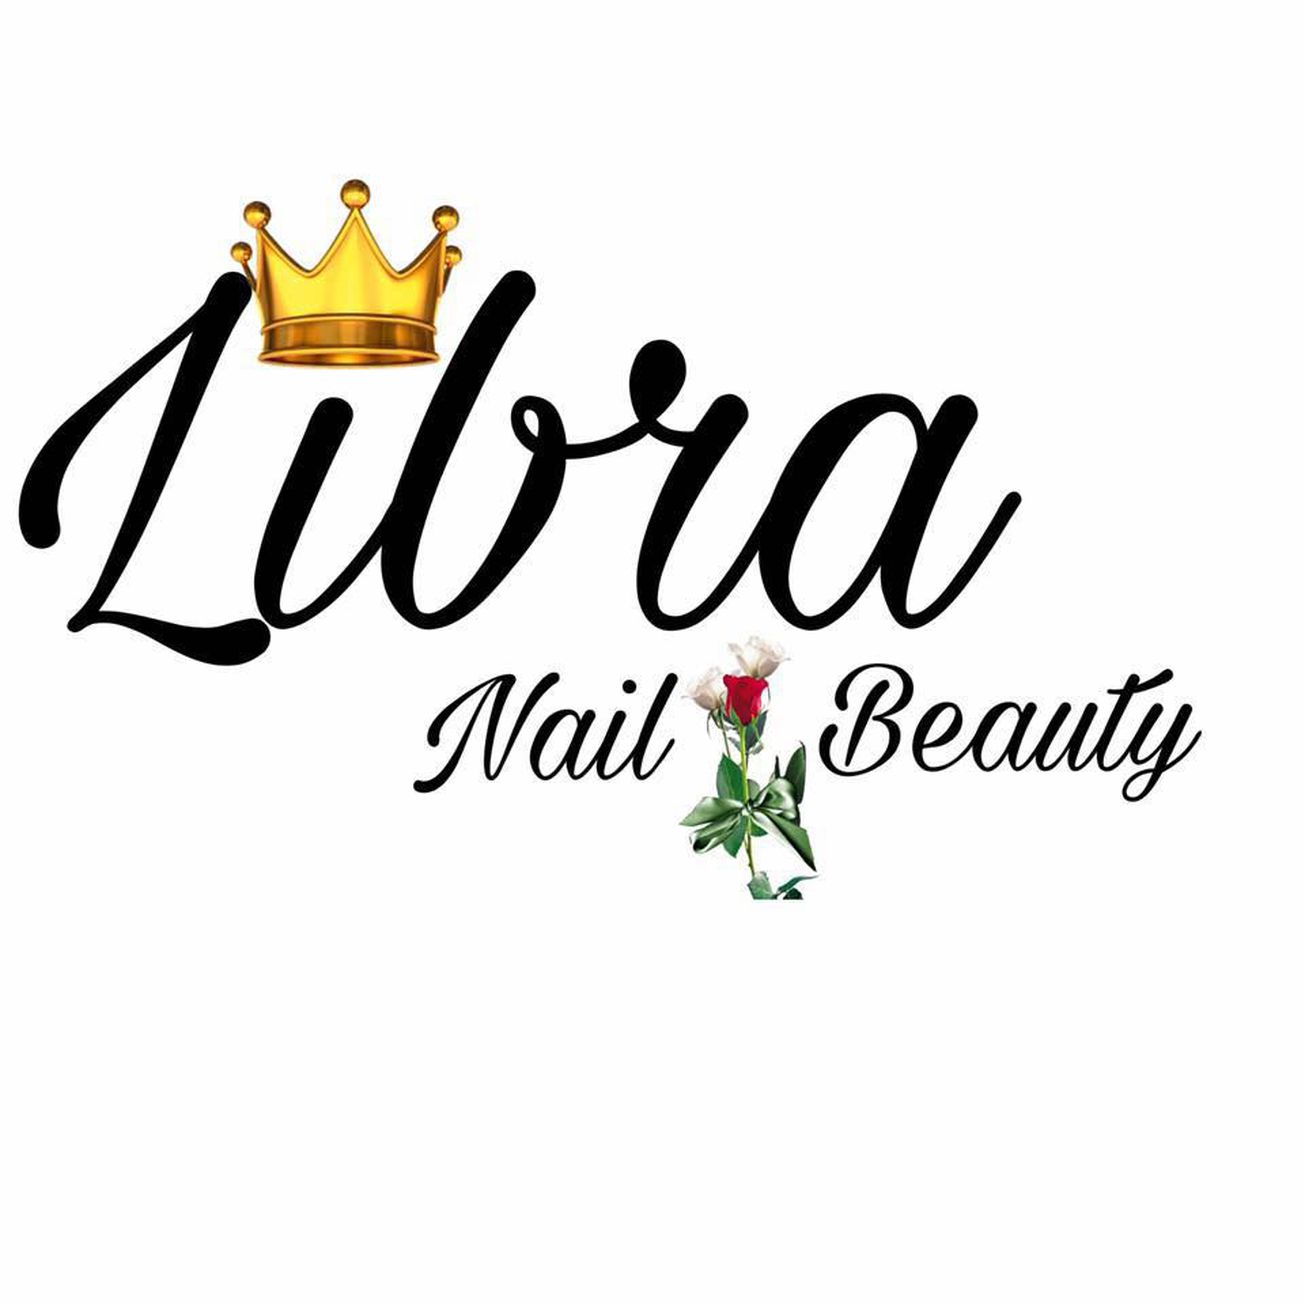 Libra Nail & Beauty 0 gallaries